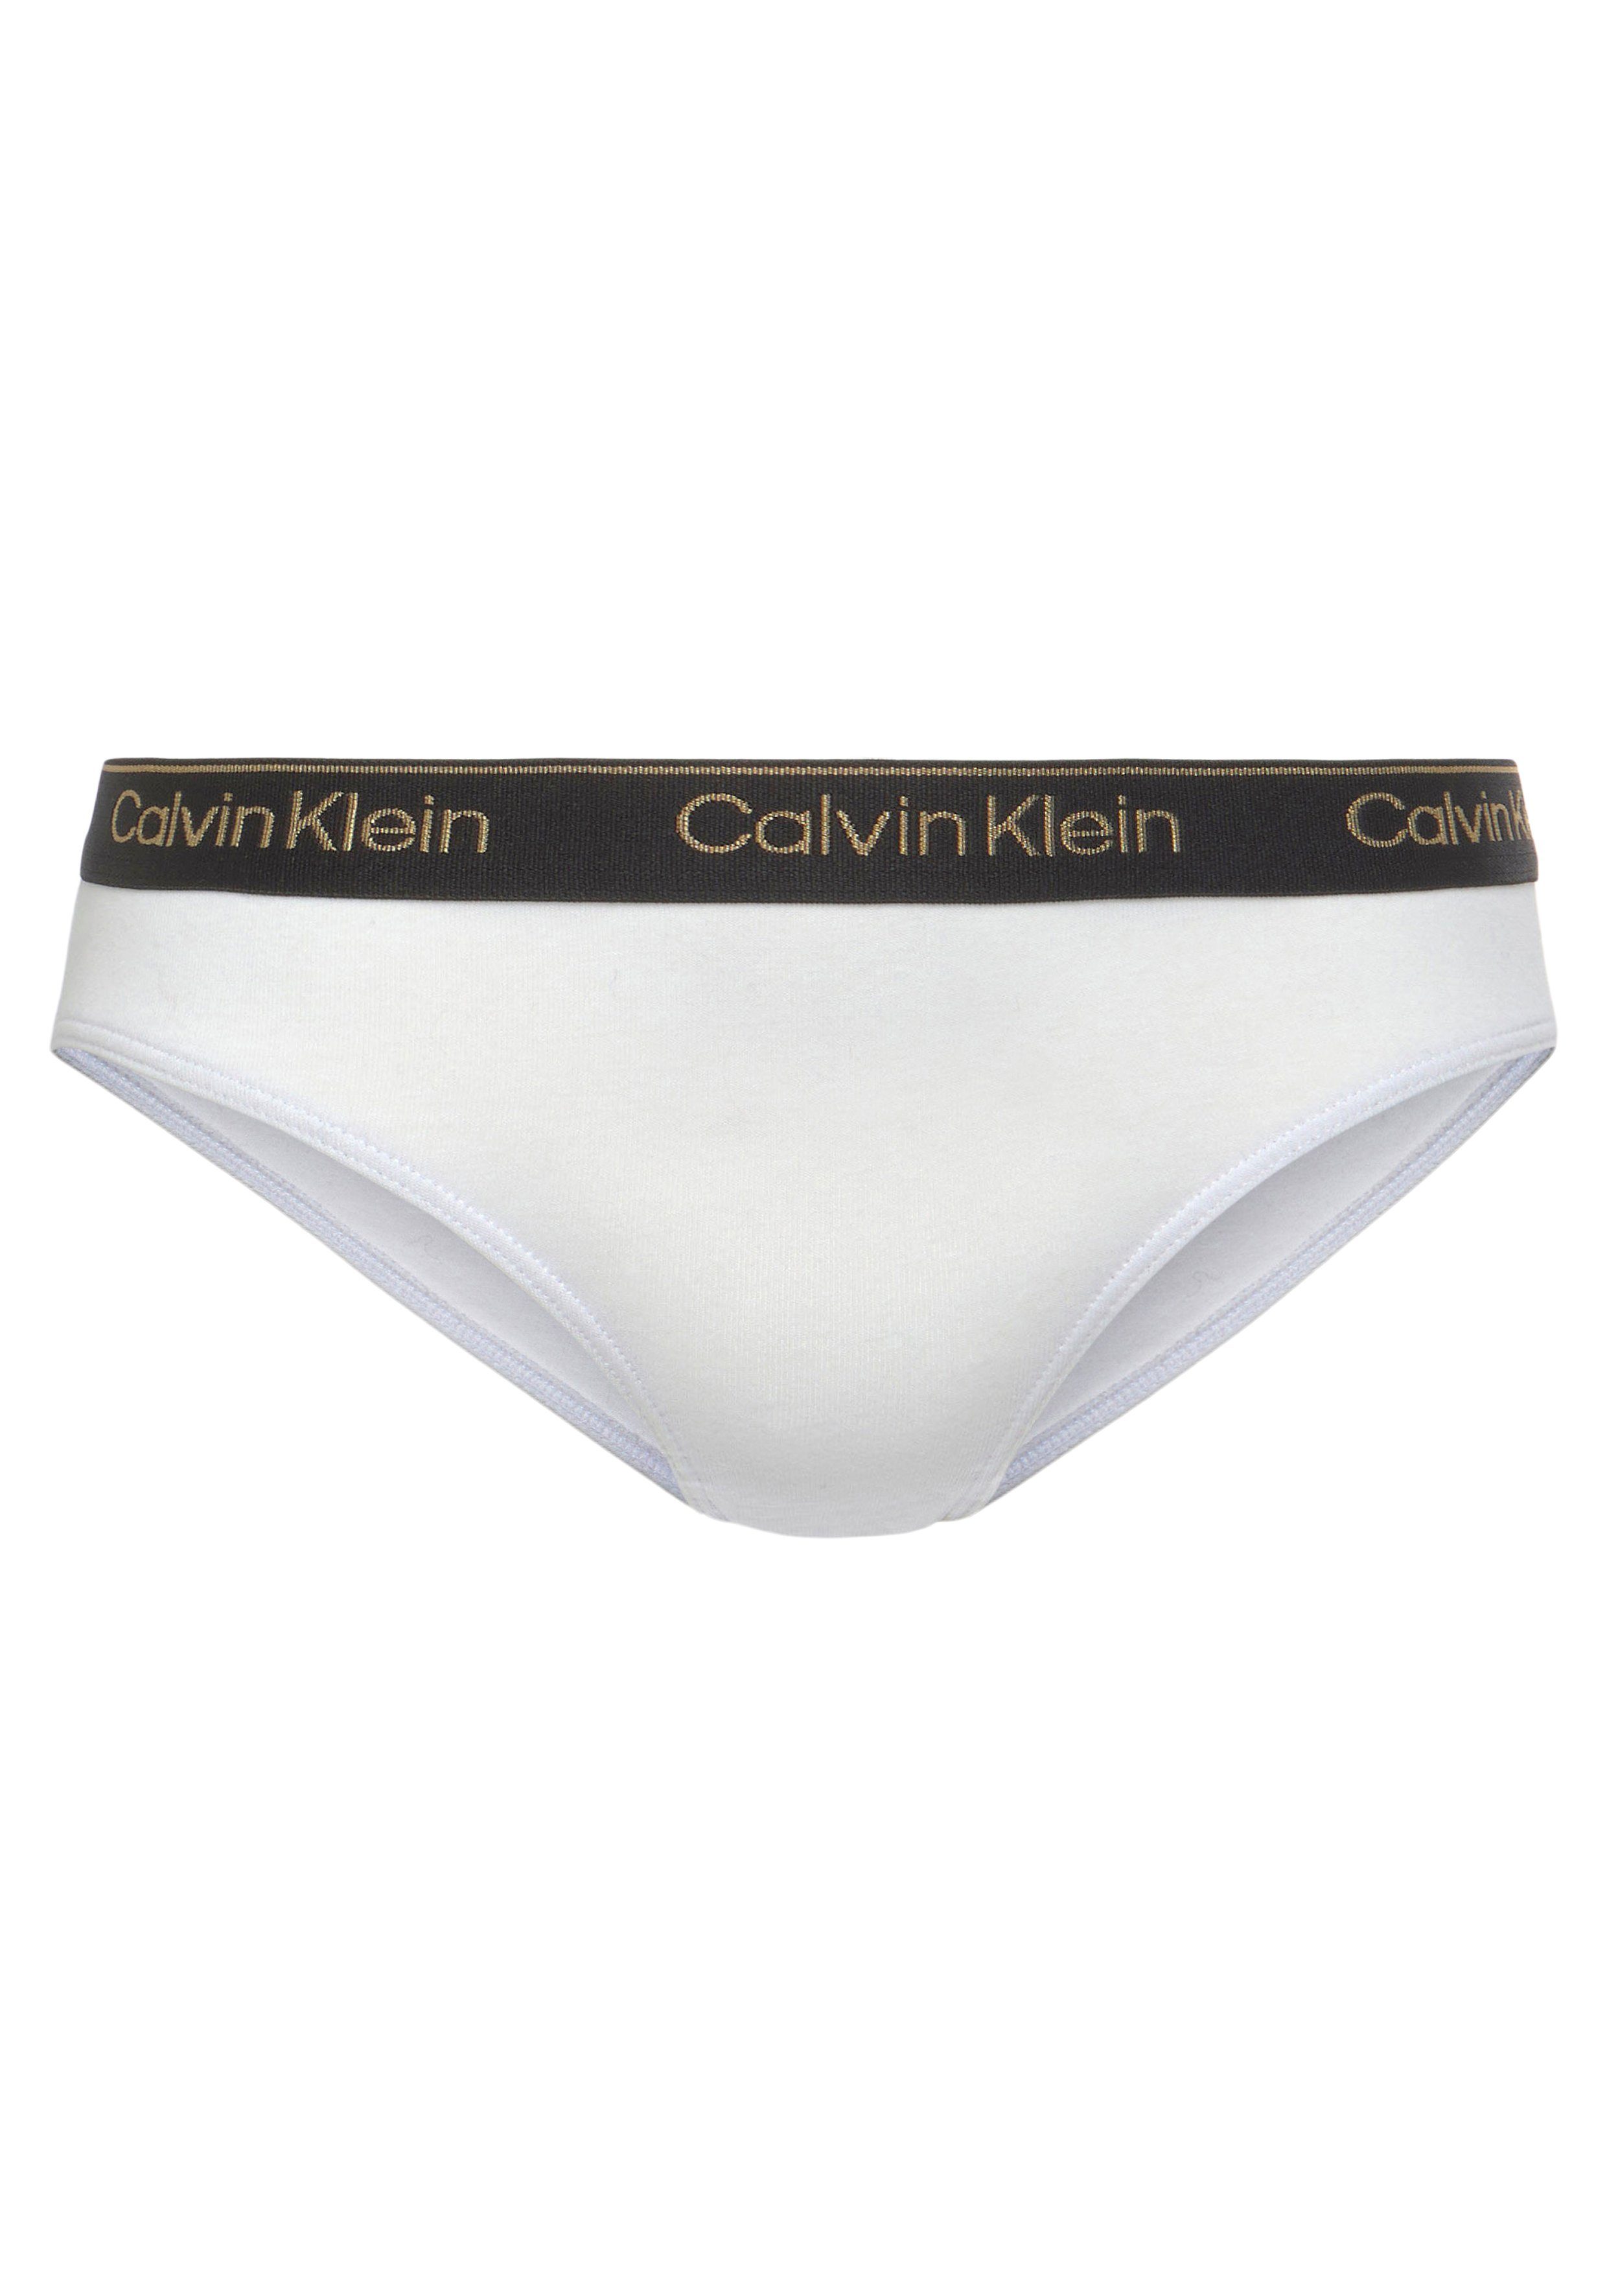 Calvin Klein Bikinislip Elastikbund mit Underwear 5er-Pack) 5PK (Packung, BIKINI Aop/Rglare/Spink/Pwhite/Pblack 5-St., sportlichem